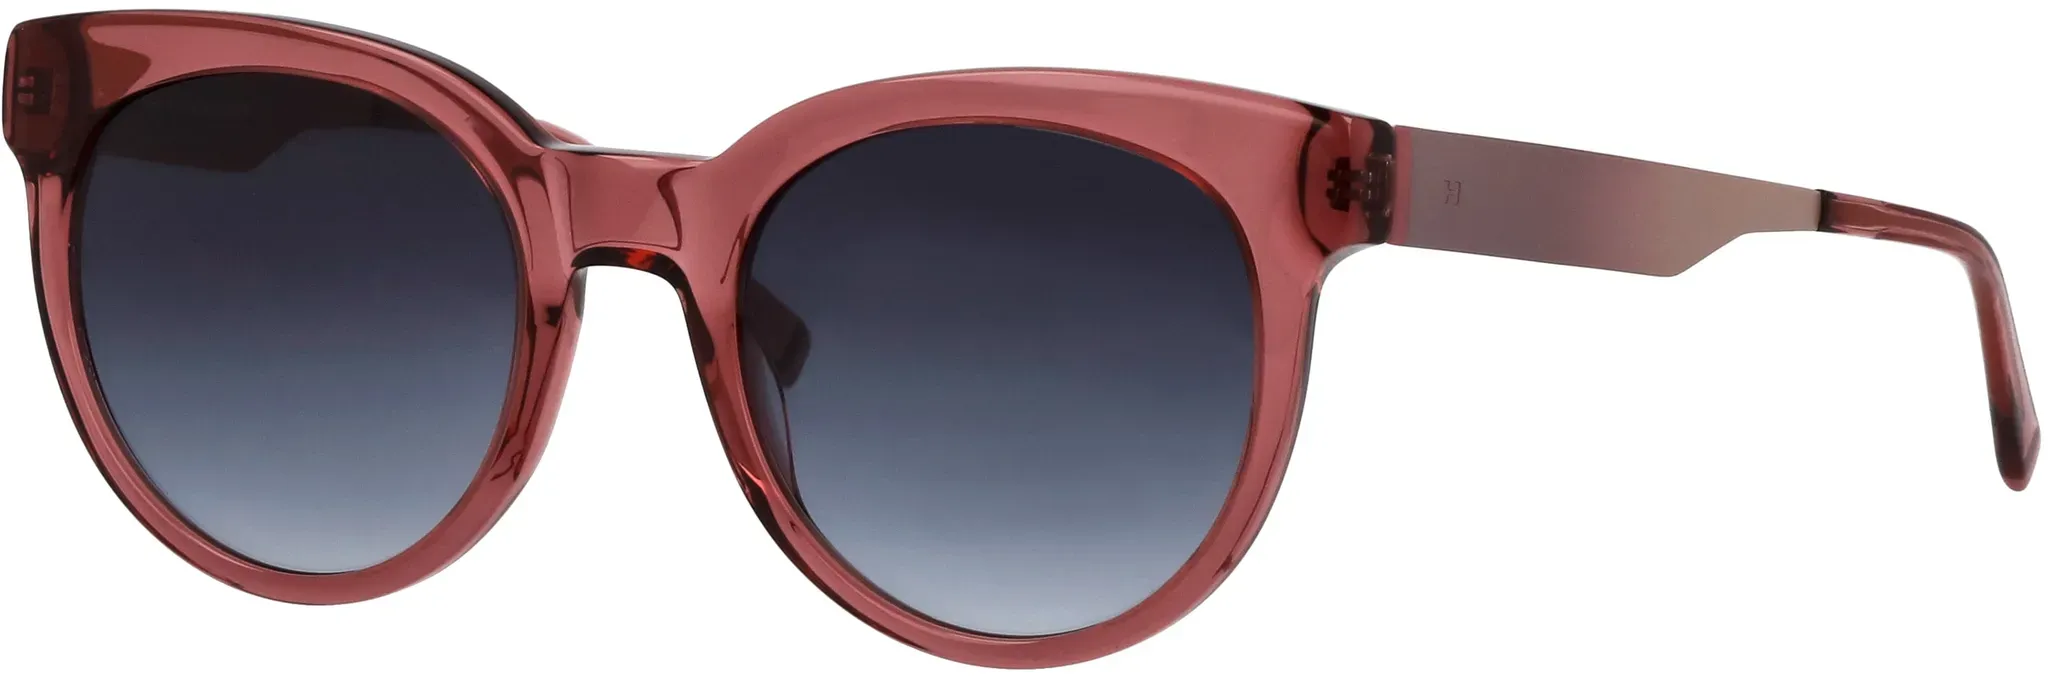 Sonnenbrille HUMPHREY ́S EYEWEAR rot Damen Brillen Sonnenbrillen mit leichter Verlaufstönung